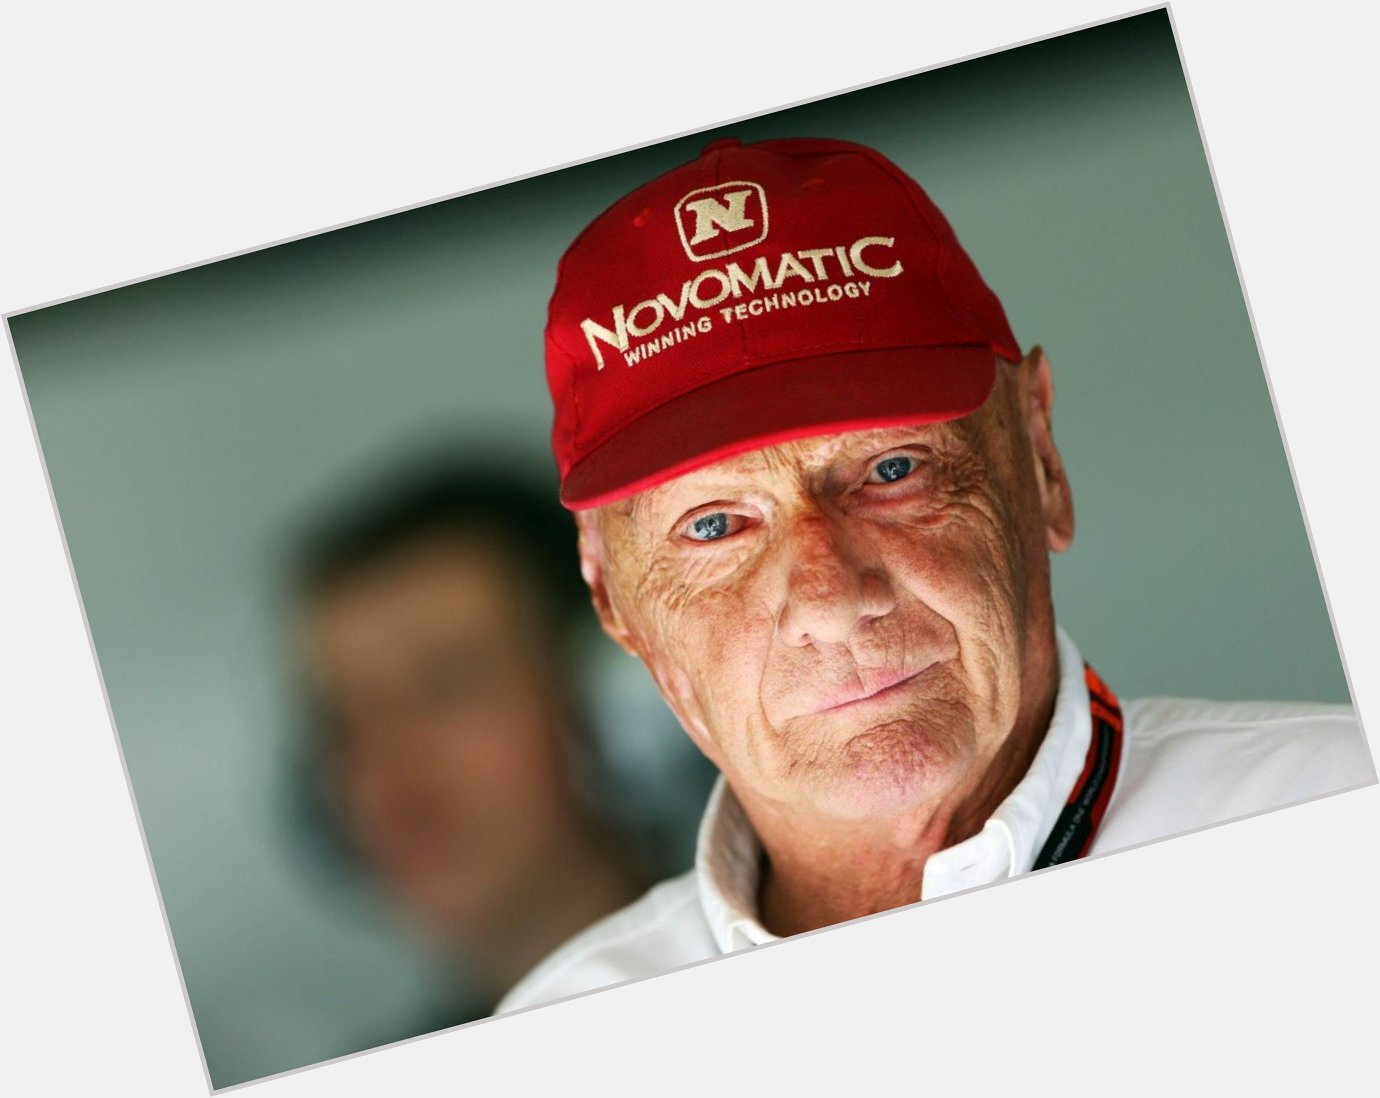 Happy Birthday Niki Lauda! 